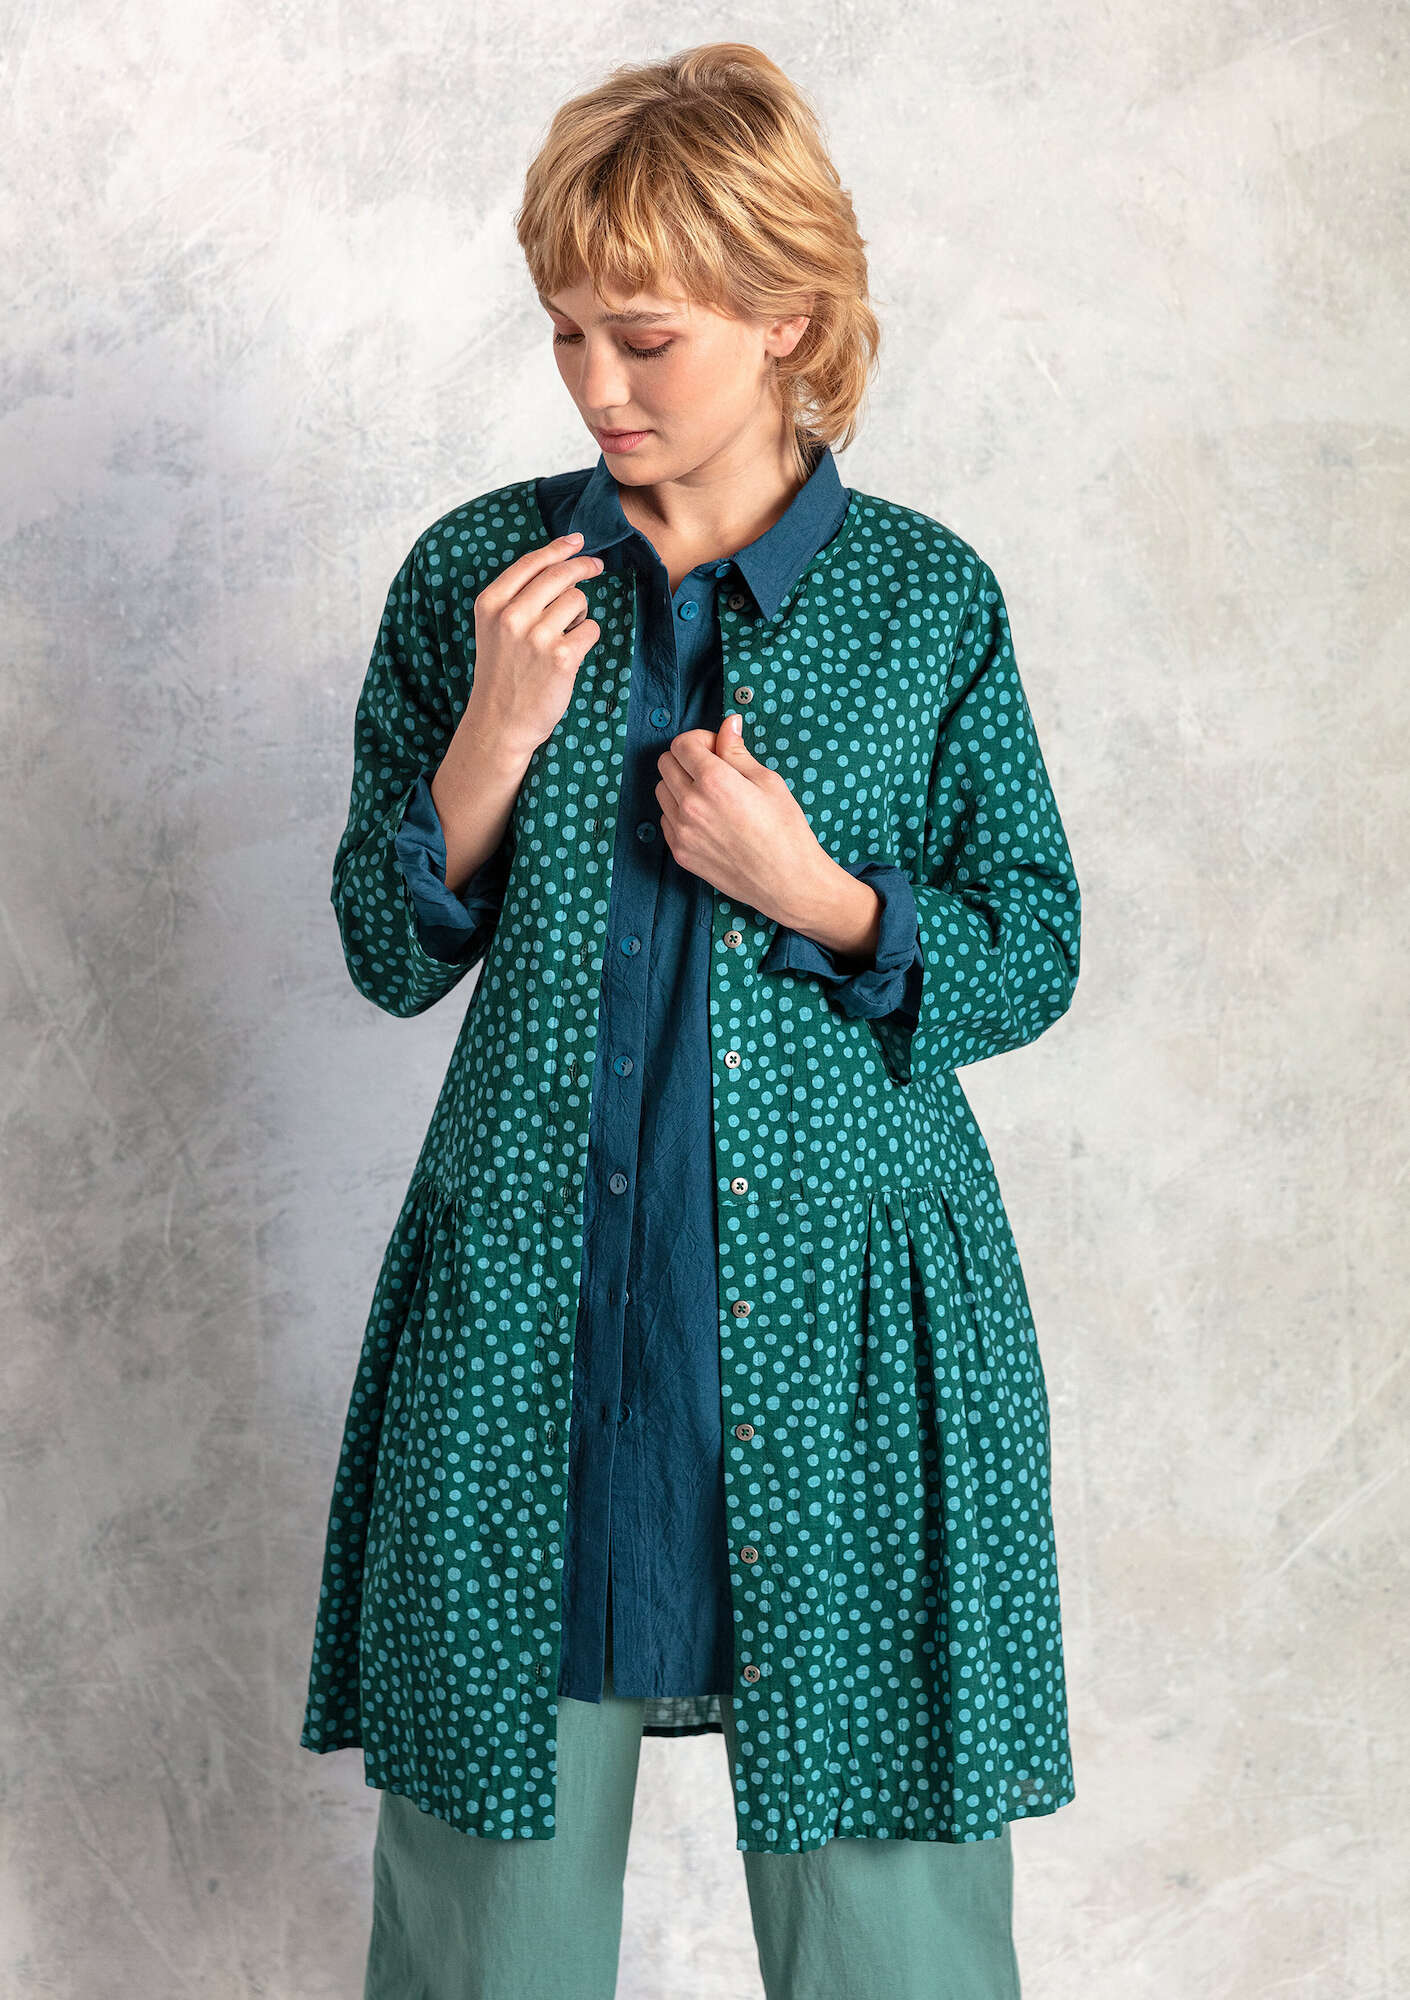 Vevd kjole «Alice» i økologisk bomull mørk grønn/mønstret